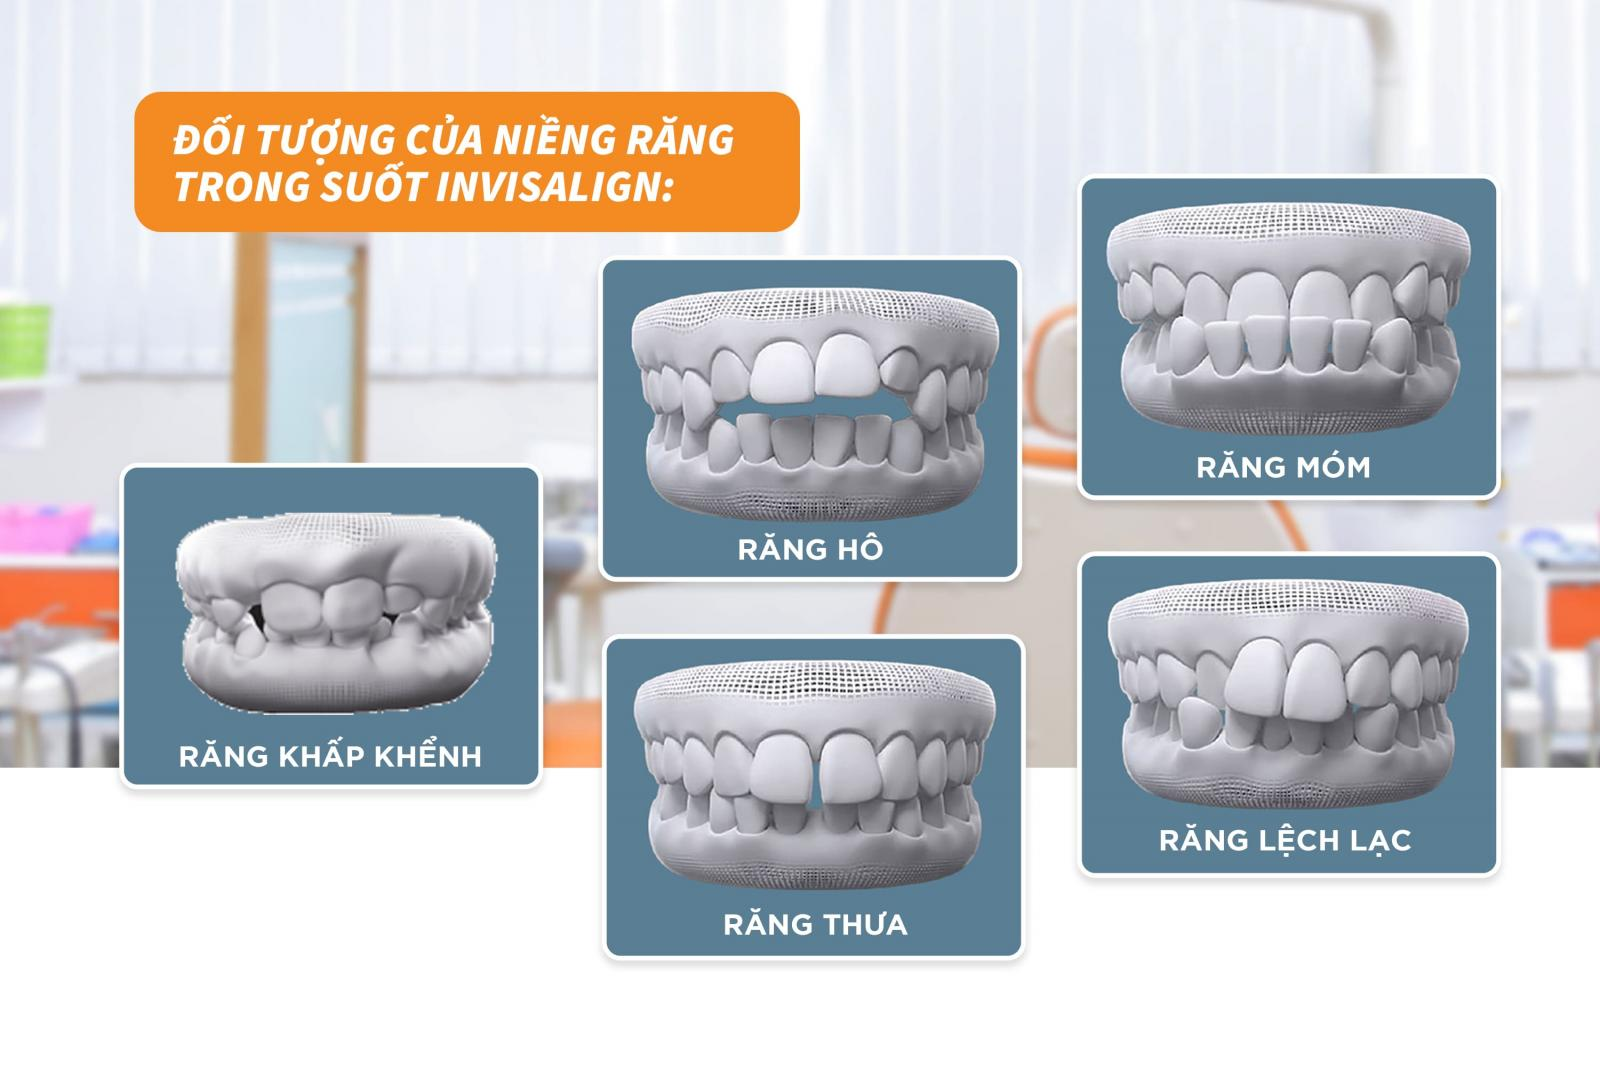 Niềng răng invisalign mang lại hiệu quả cho những đối tượng nào?